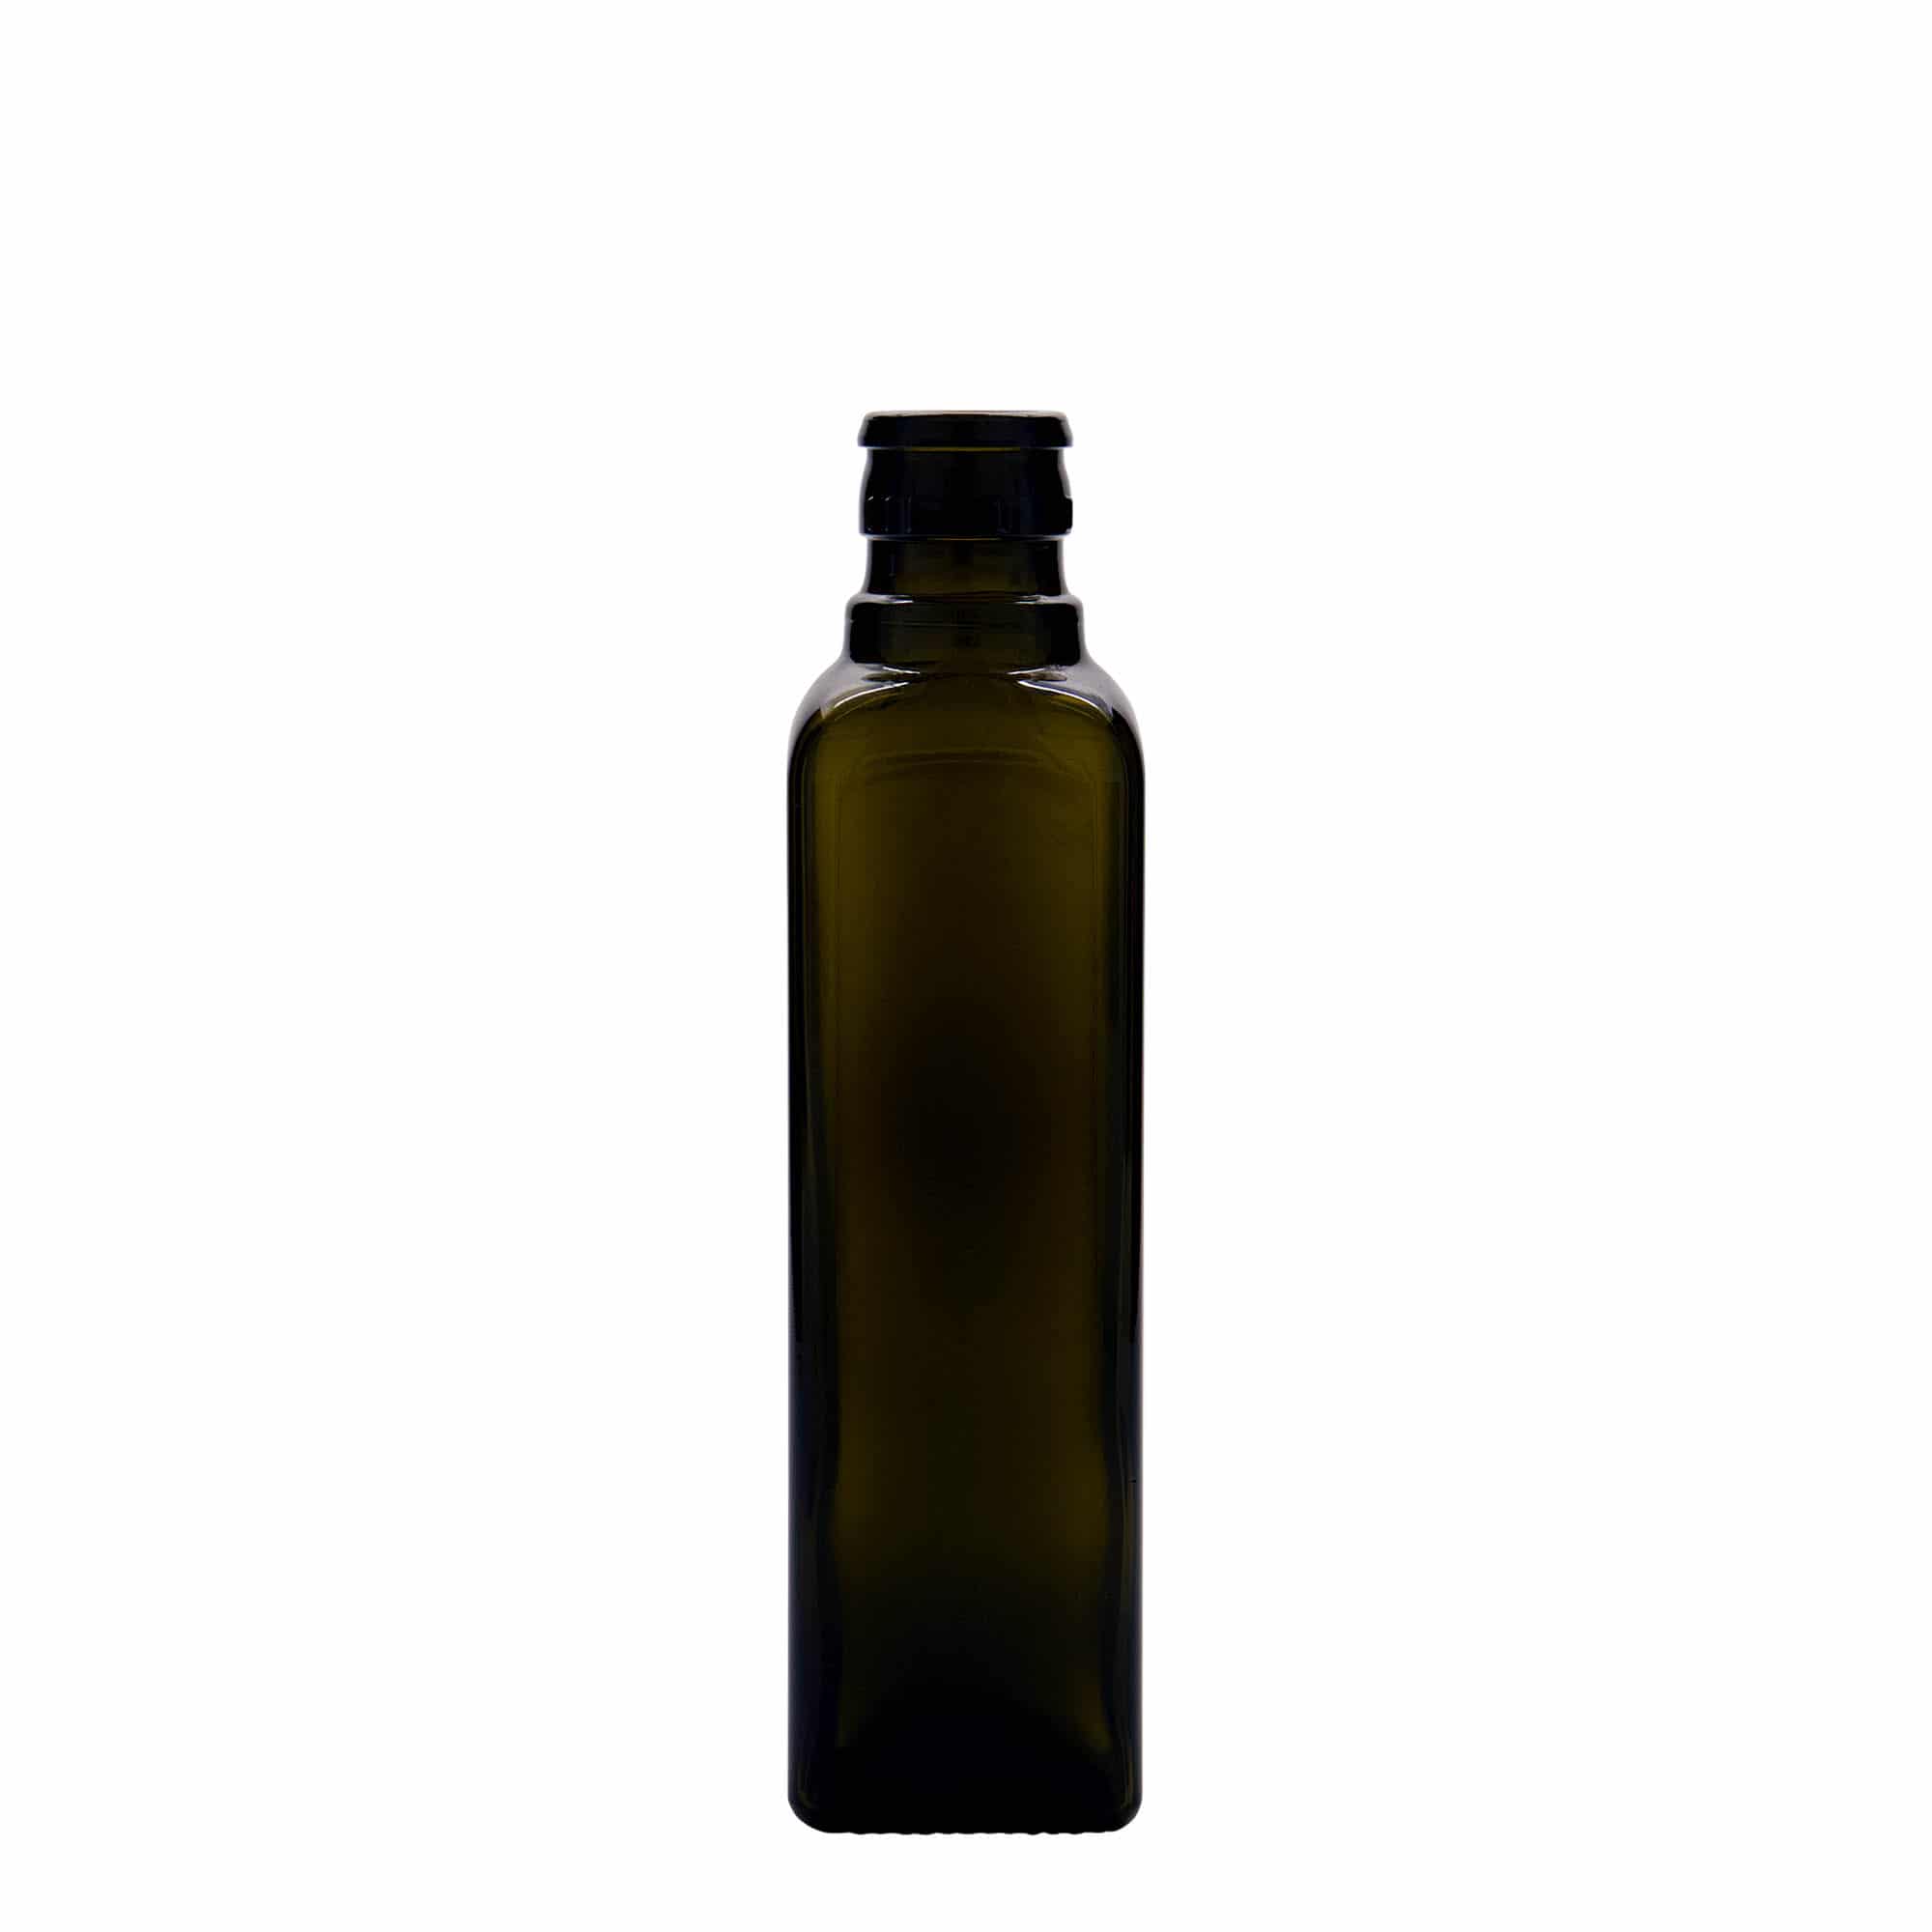 250 ml eddike-/olieflaske 'Quadra', glas, kvadratisk, antikgrøn, åbning: DOP